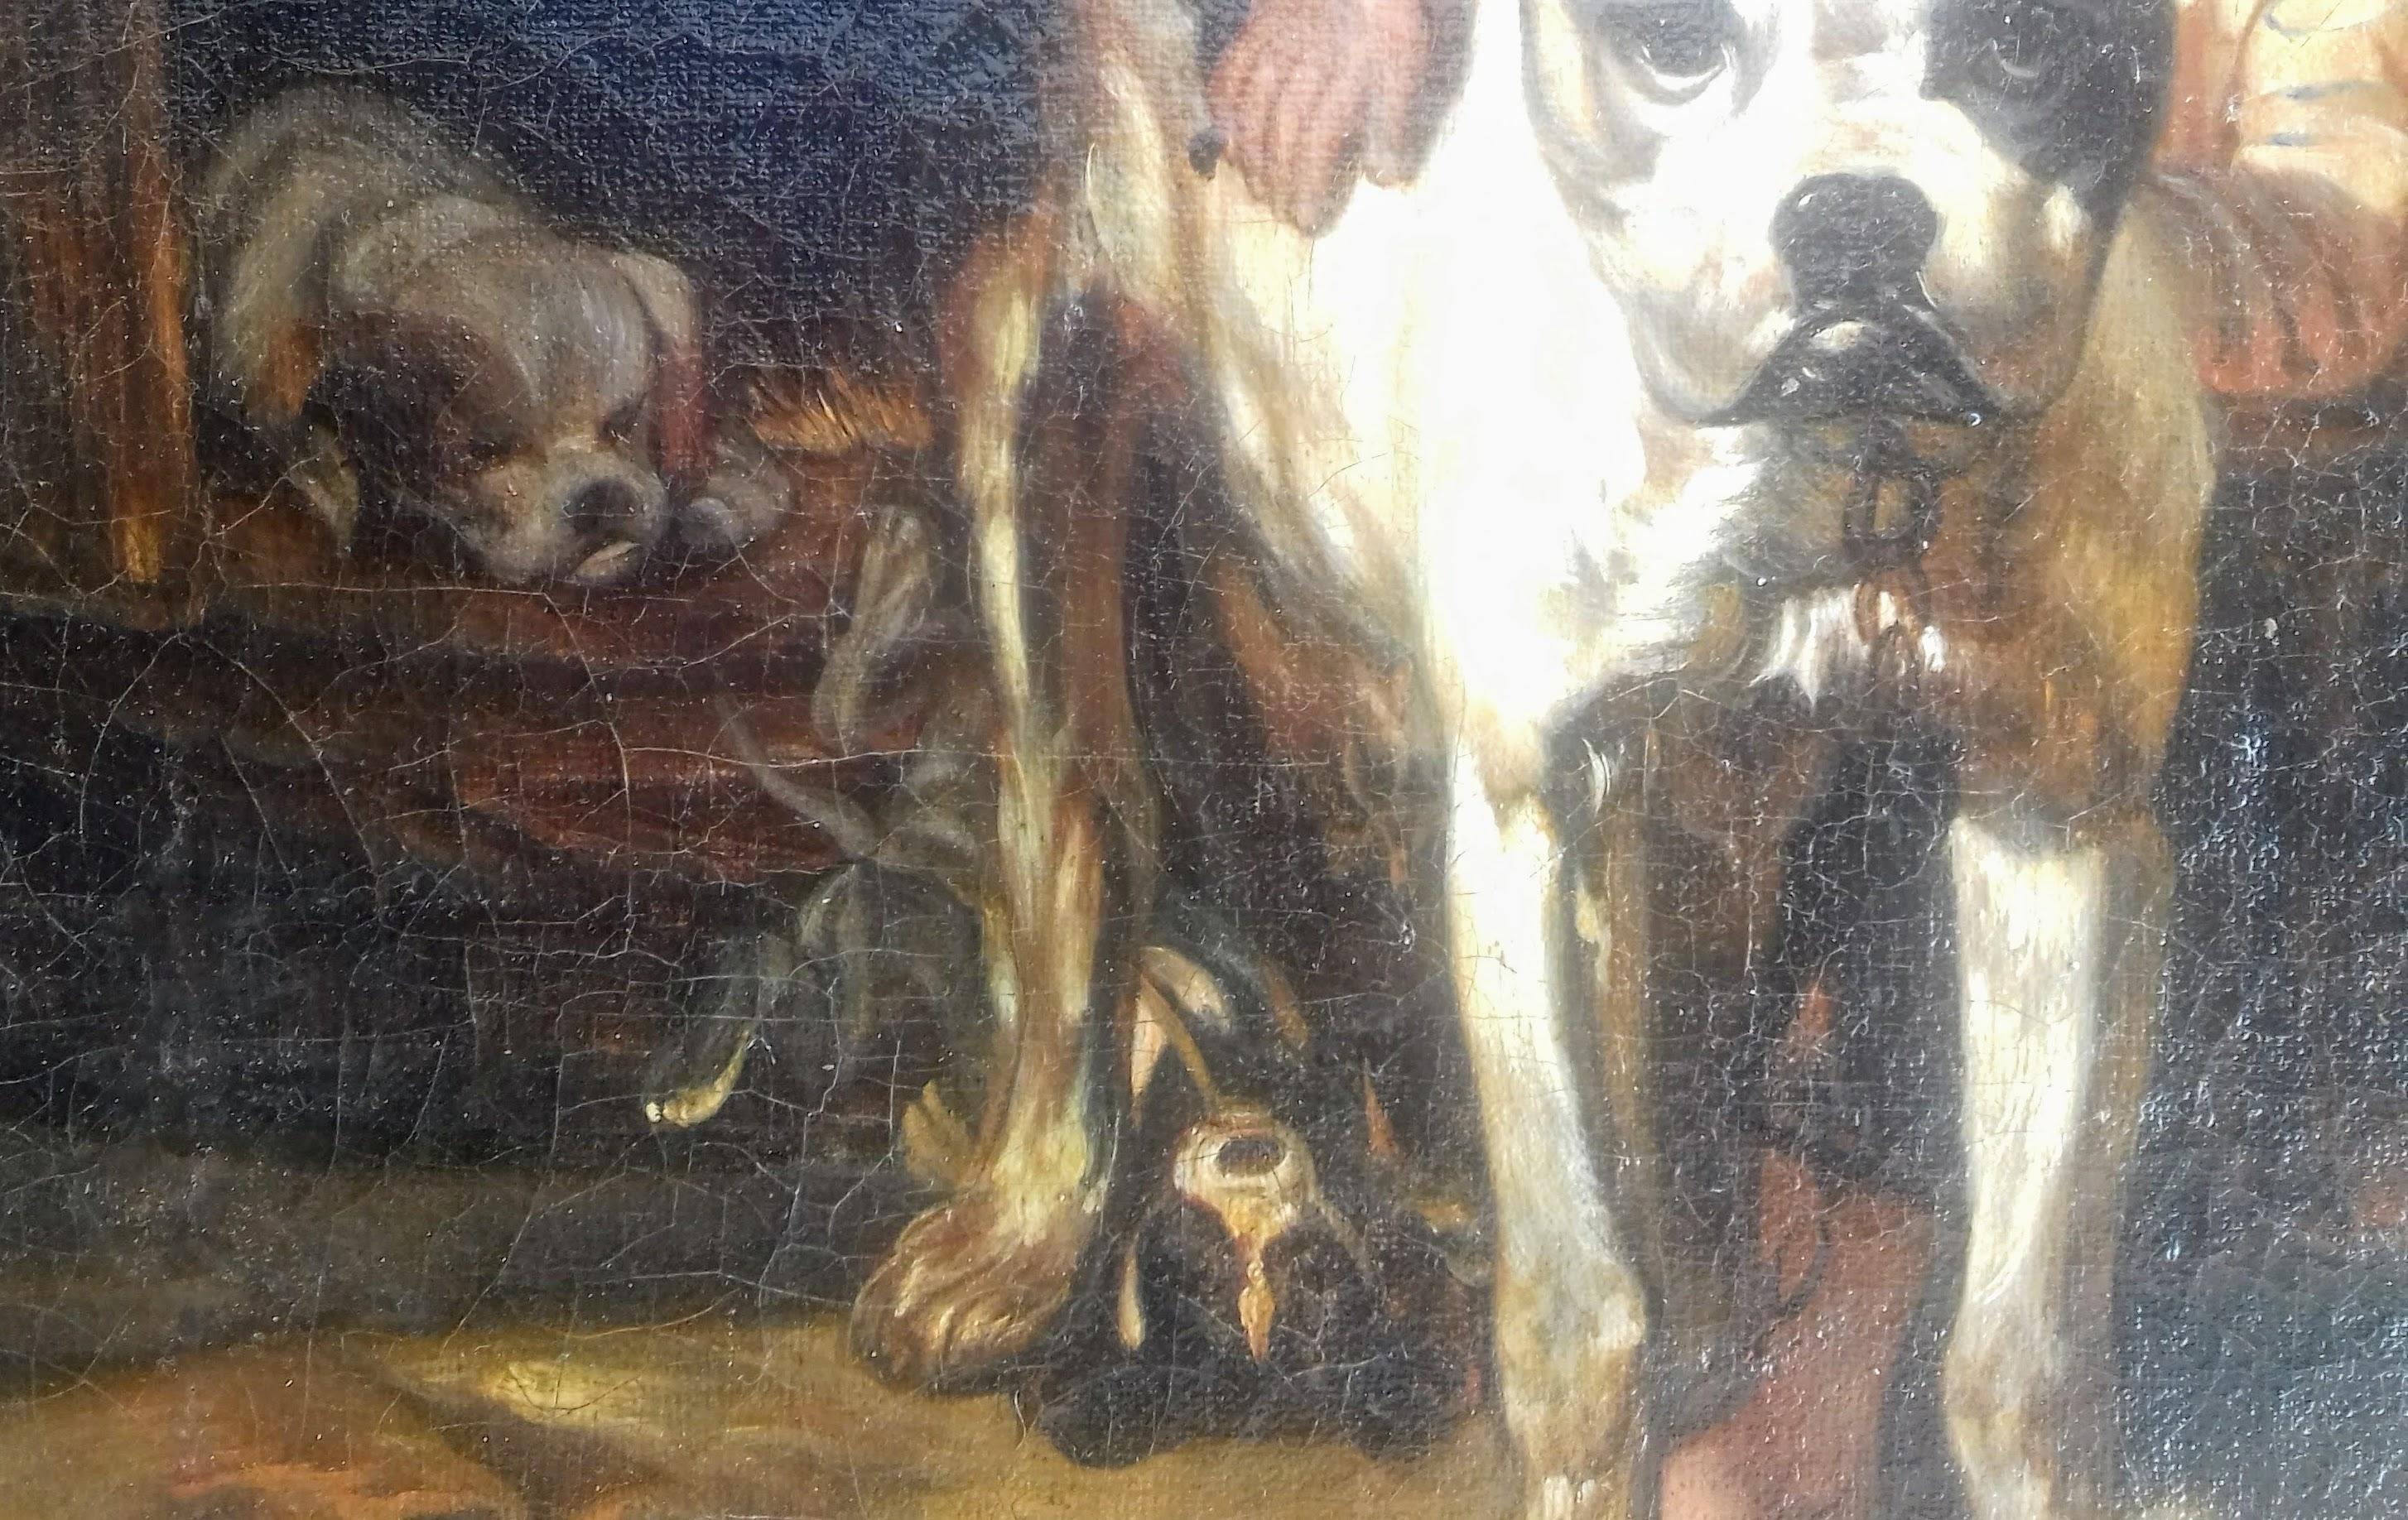 Charmante peinture canine du 19e siècle représentant une mère dogue et ses petits exubérants près des granges ou des étables d'une ferme, avec un jeune enfant qui leur fait des papouilles !

Datant d'environ 1860-70, cette huile sur toile n'est pas